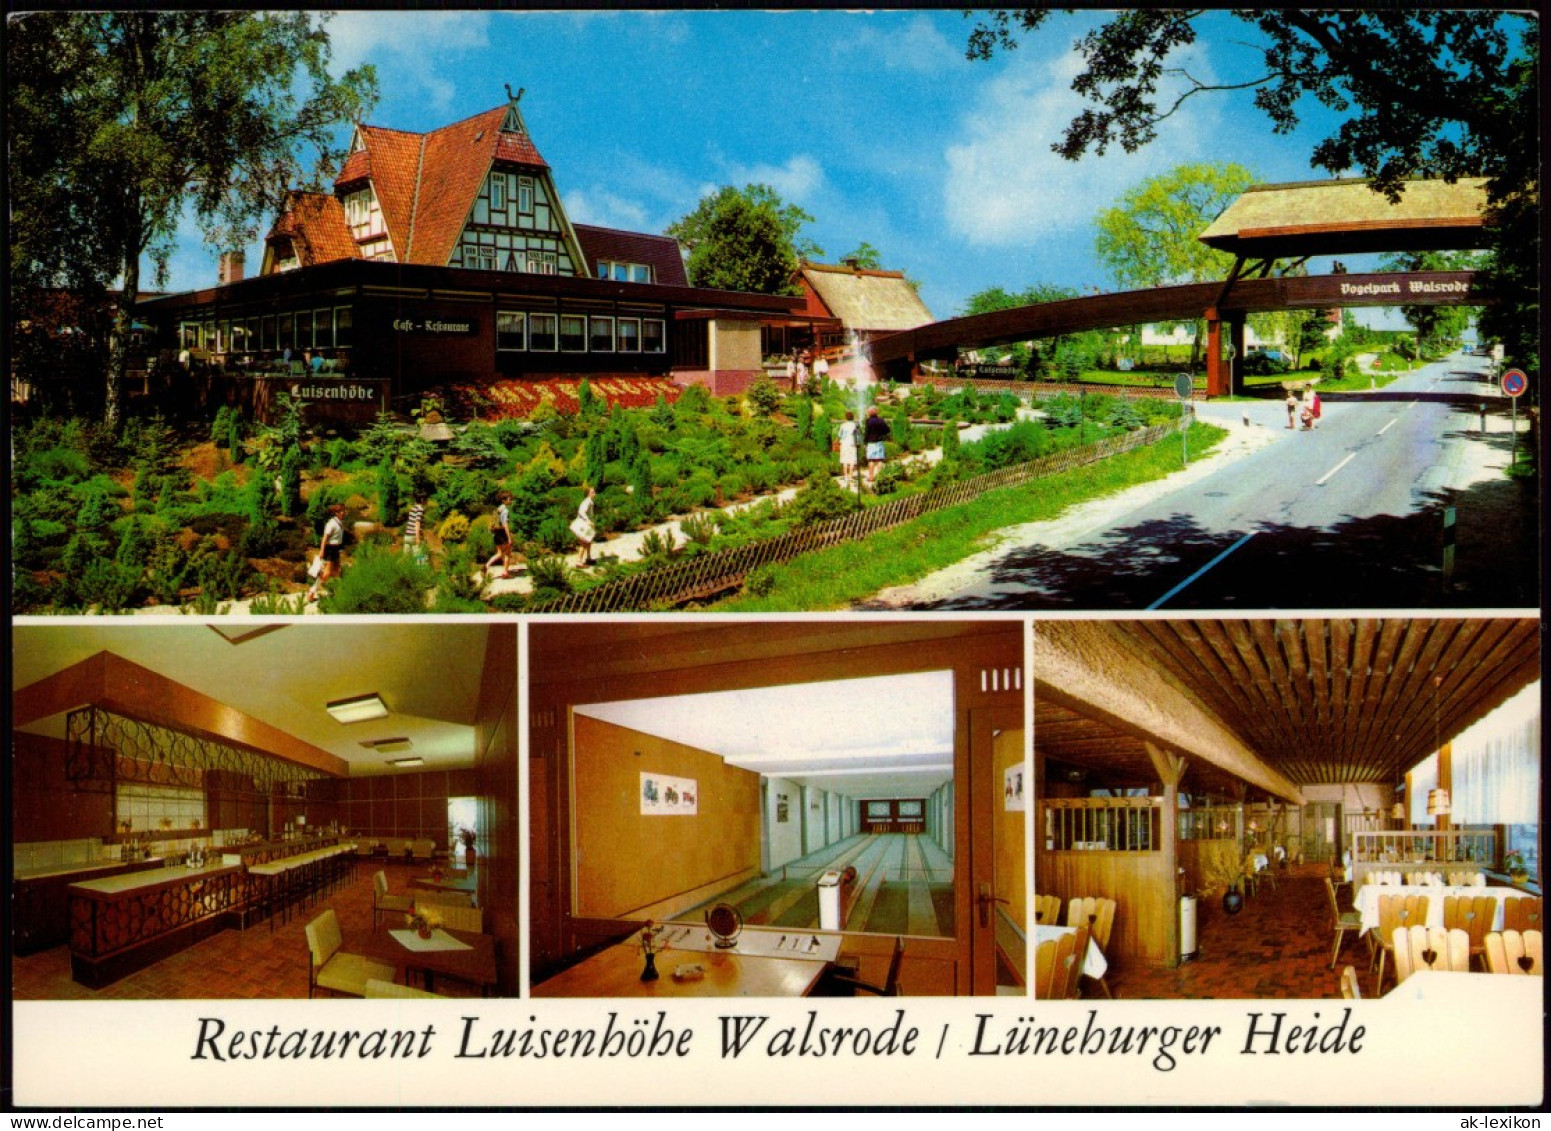 Ansichtskarte Walsrode Restaurant Luisenhöhe Walsrode Lüneburger Heide 1976 - Walsrode